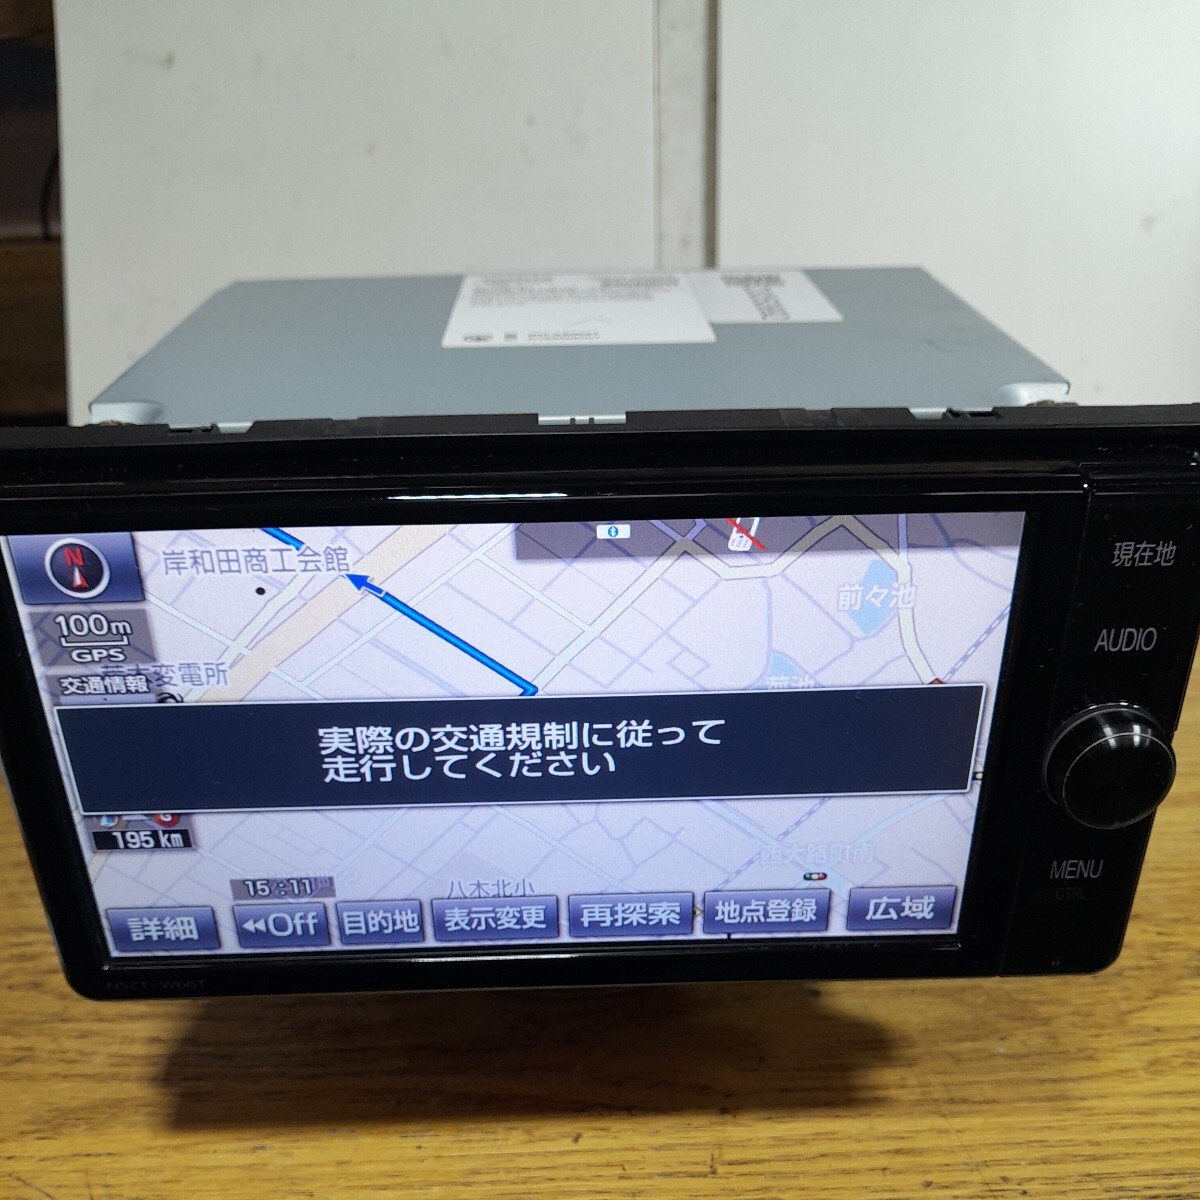  Toyota оригинальная навигация NSZT-W66T 2017 год весна версия карта данные ( контрольный номер :23050992)